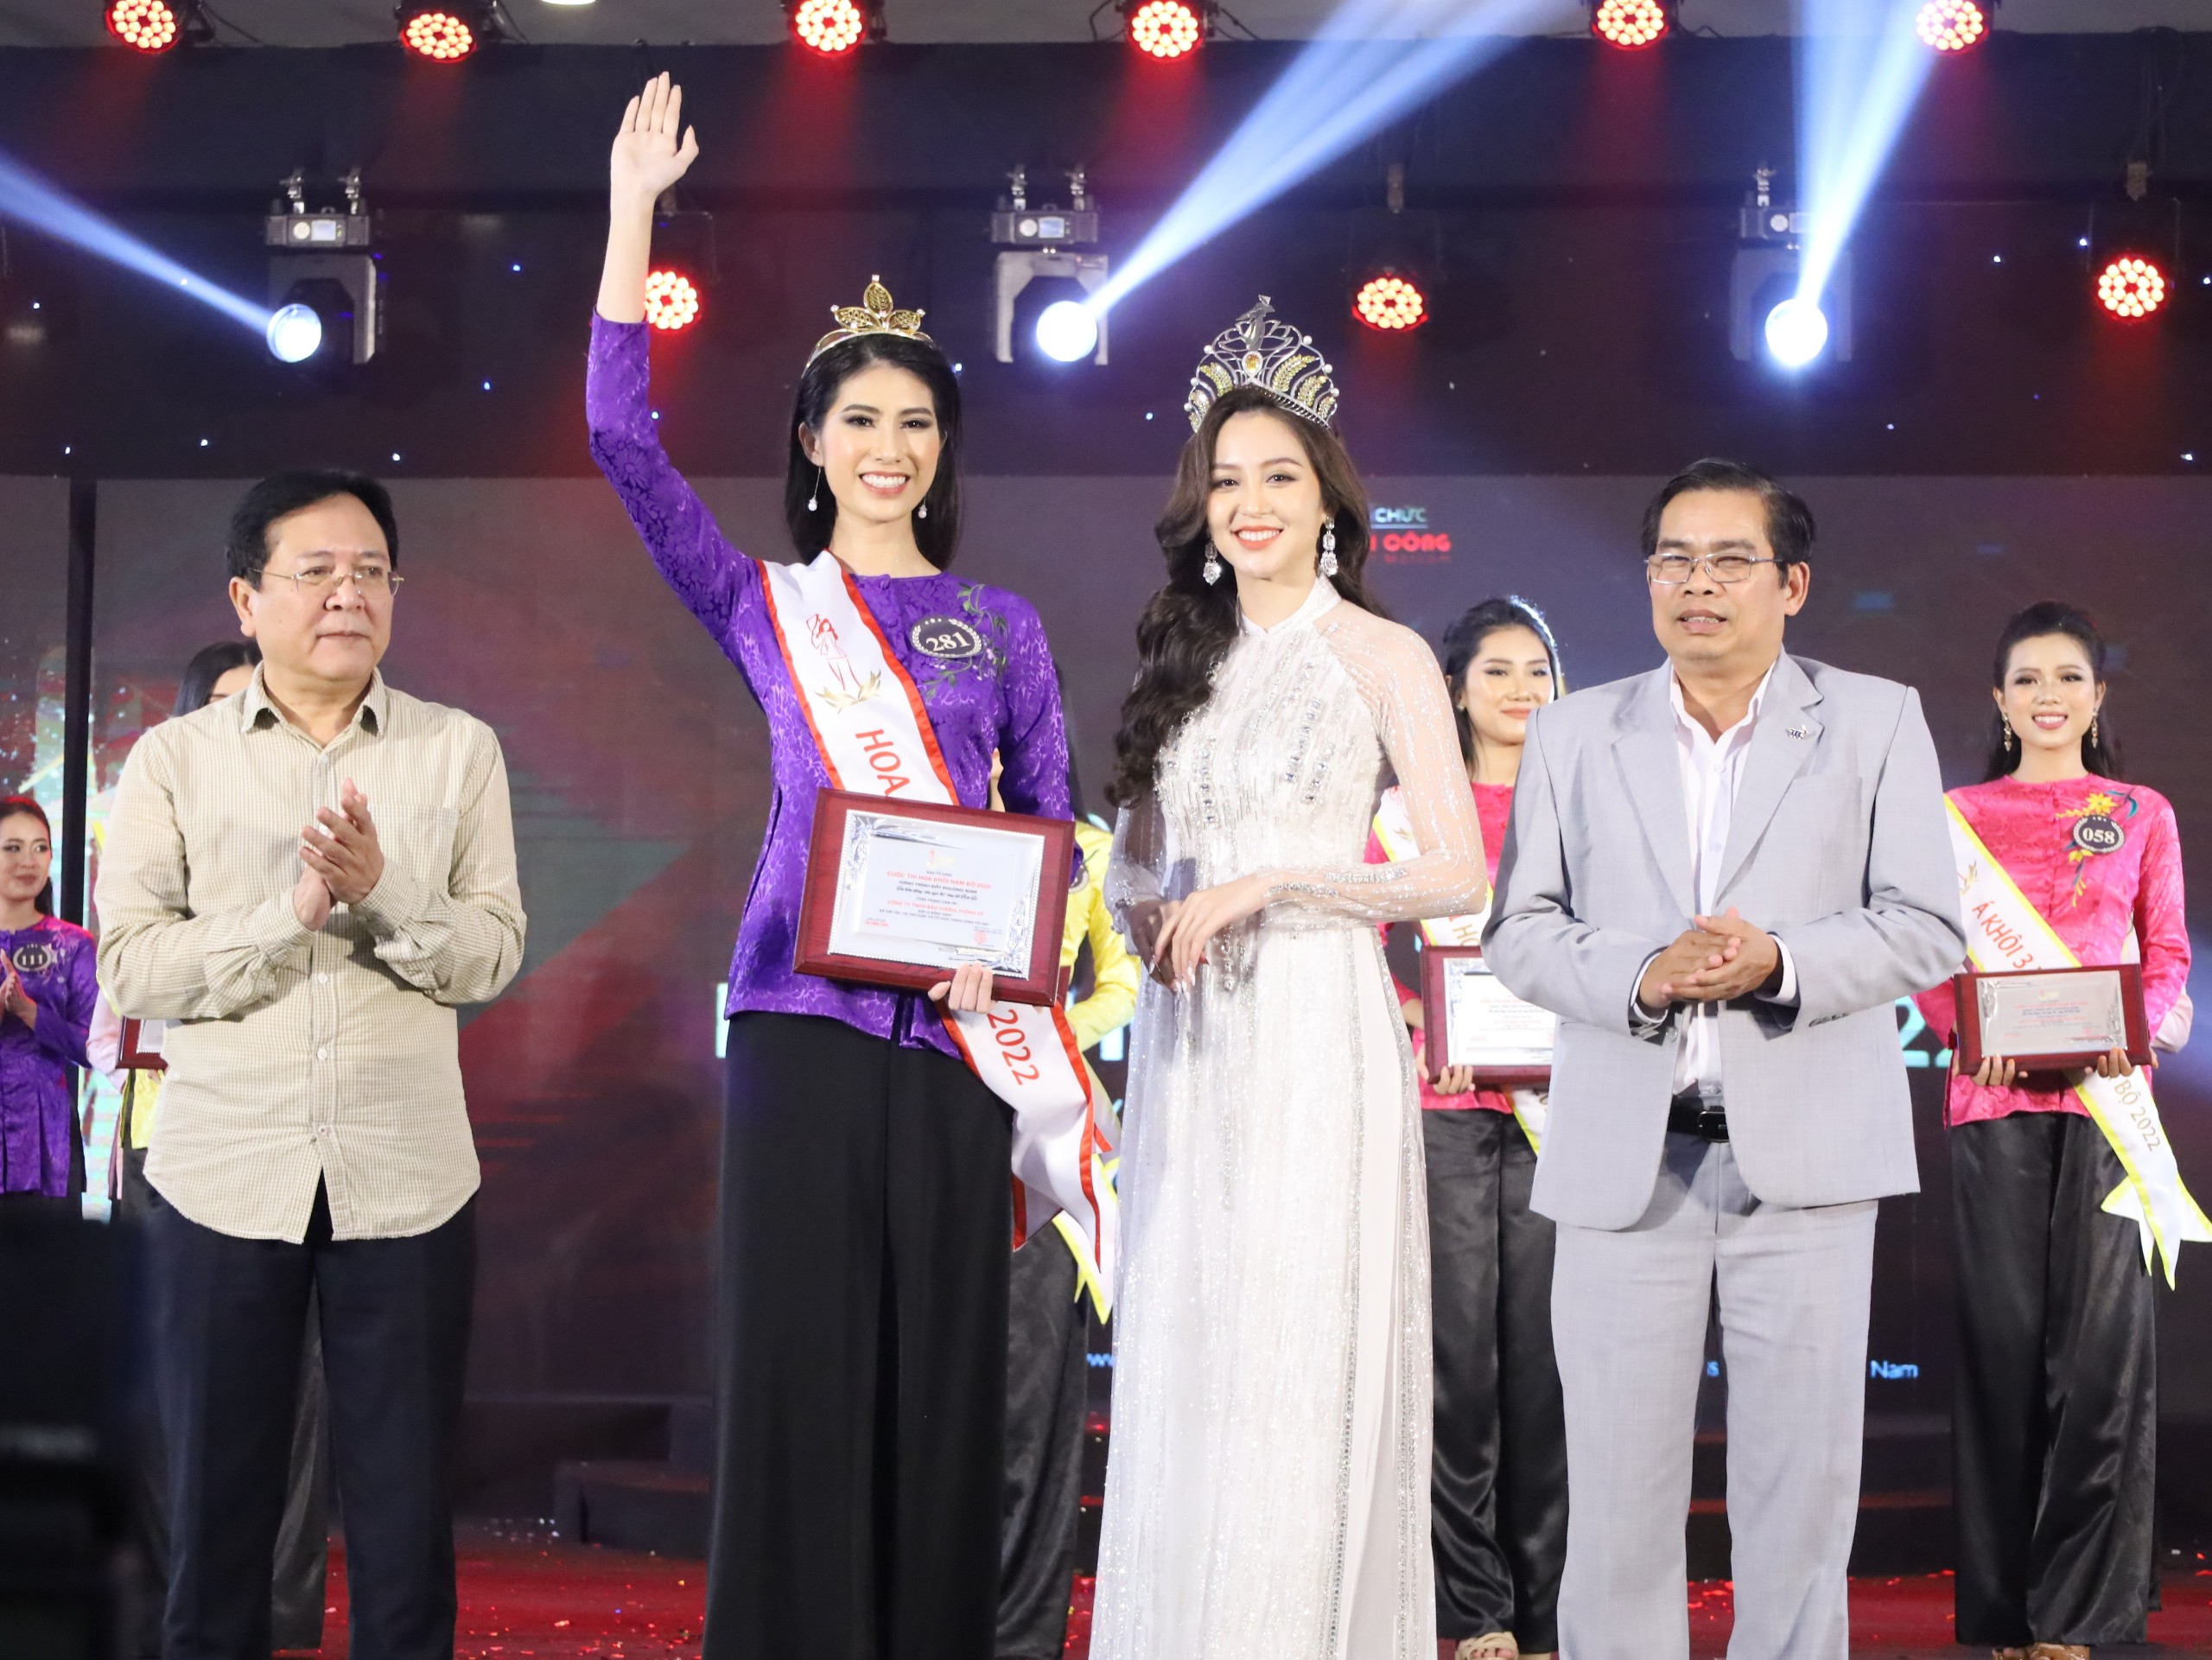 Người đẹp Lê Thị Kiều Nhung, sinh năm 1998, chiều cao 1,8m - đến từ tỉnh Trà Vinh đăng quang danh hiệu Hoa khôi Nam bộ năm 2022.